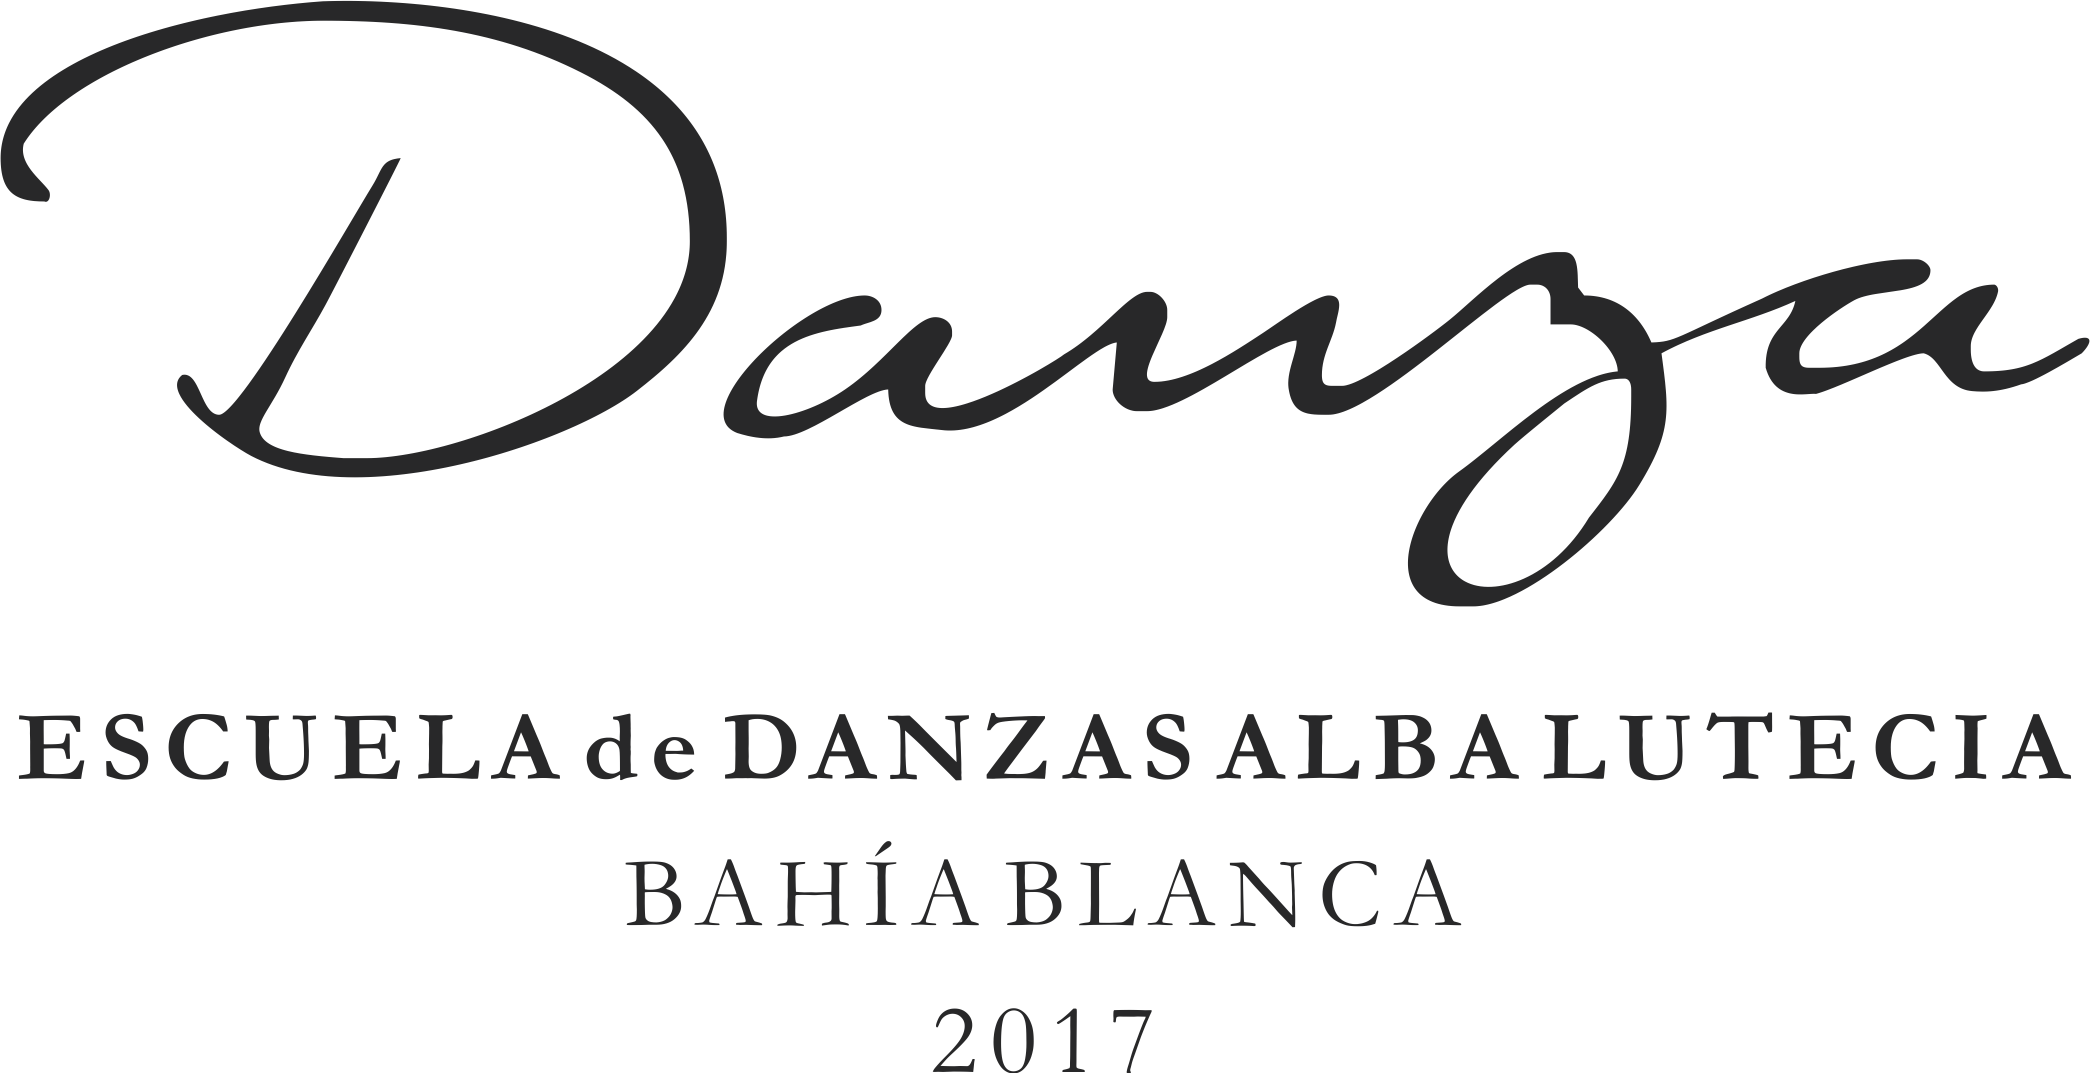 Escuela de Danzas de Bahía Blanca